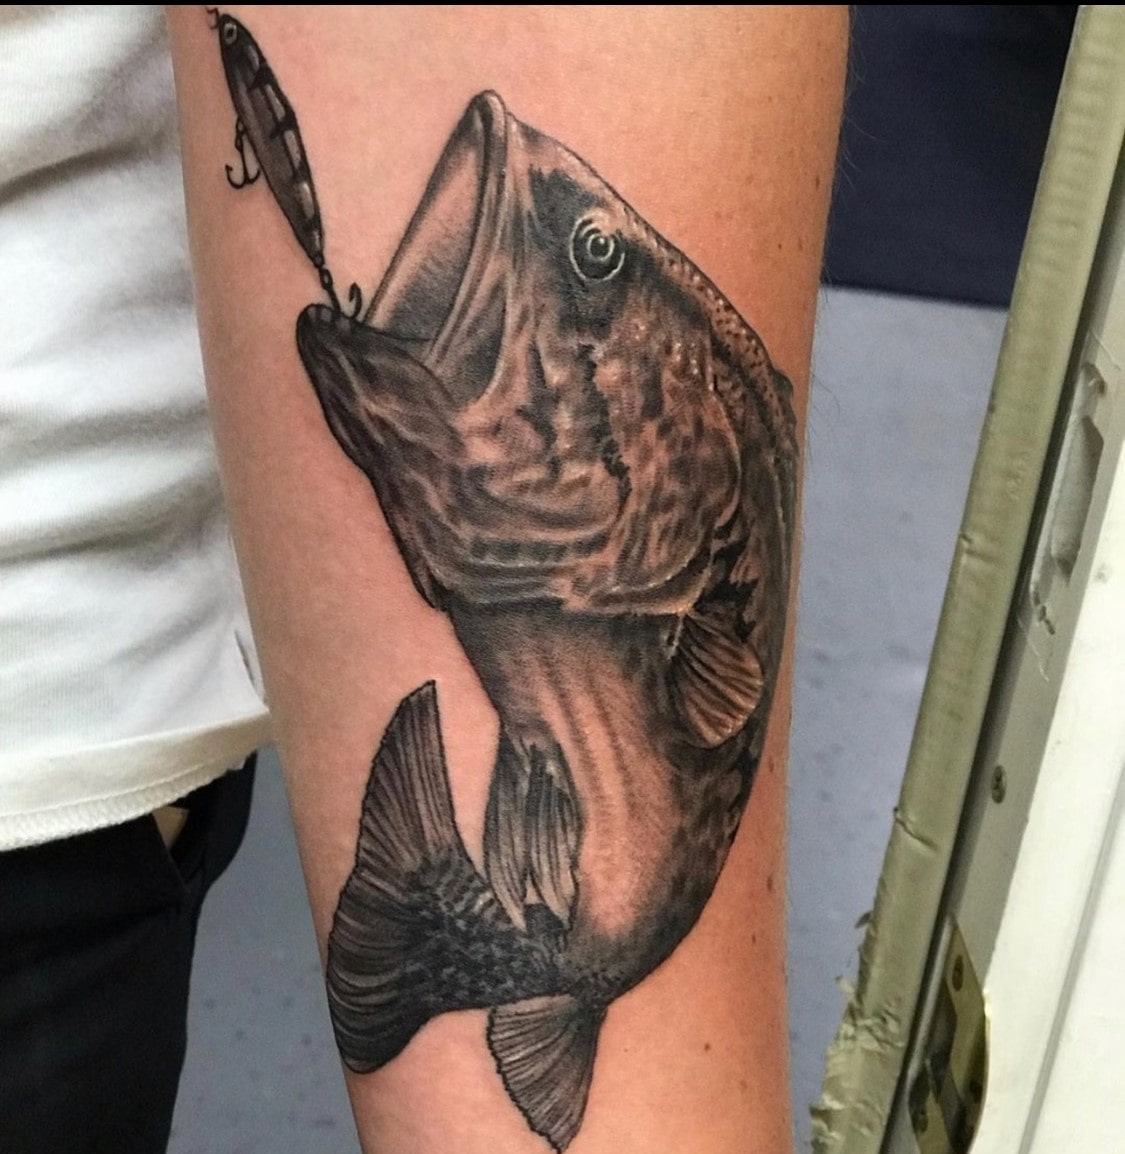 Fish Hook Tattoo Art Las Vegas Trip Ink Tattoo - Tattoos Las Vegas